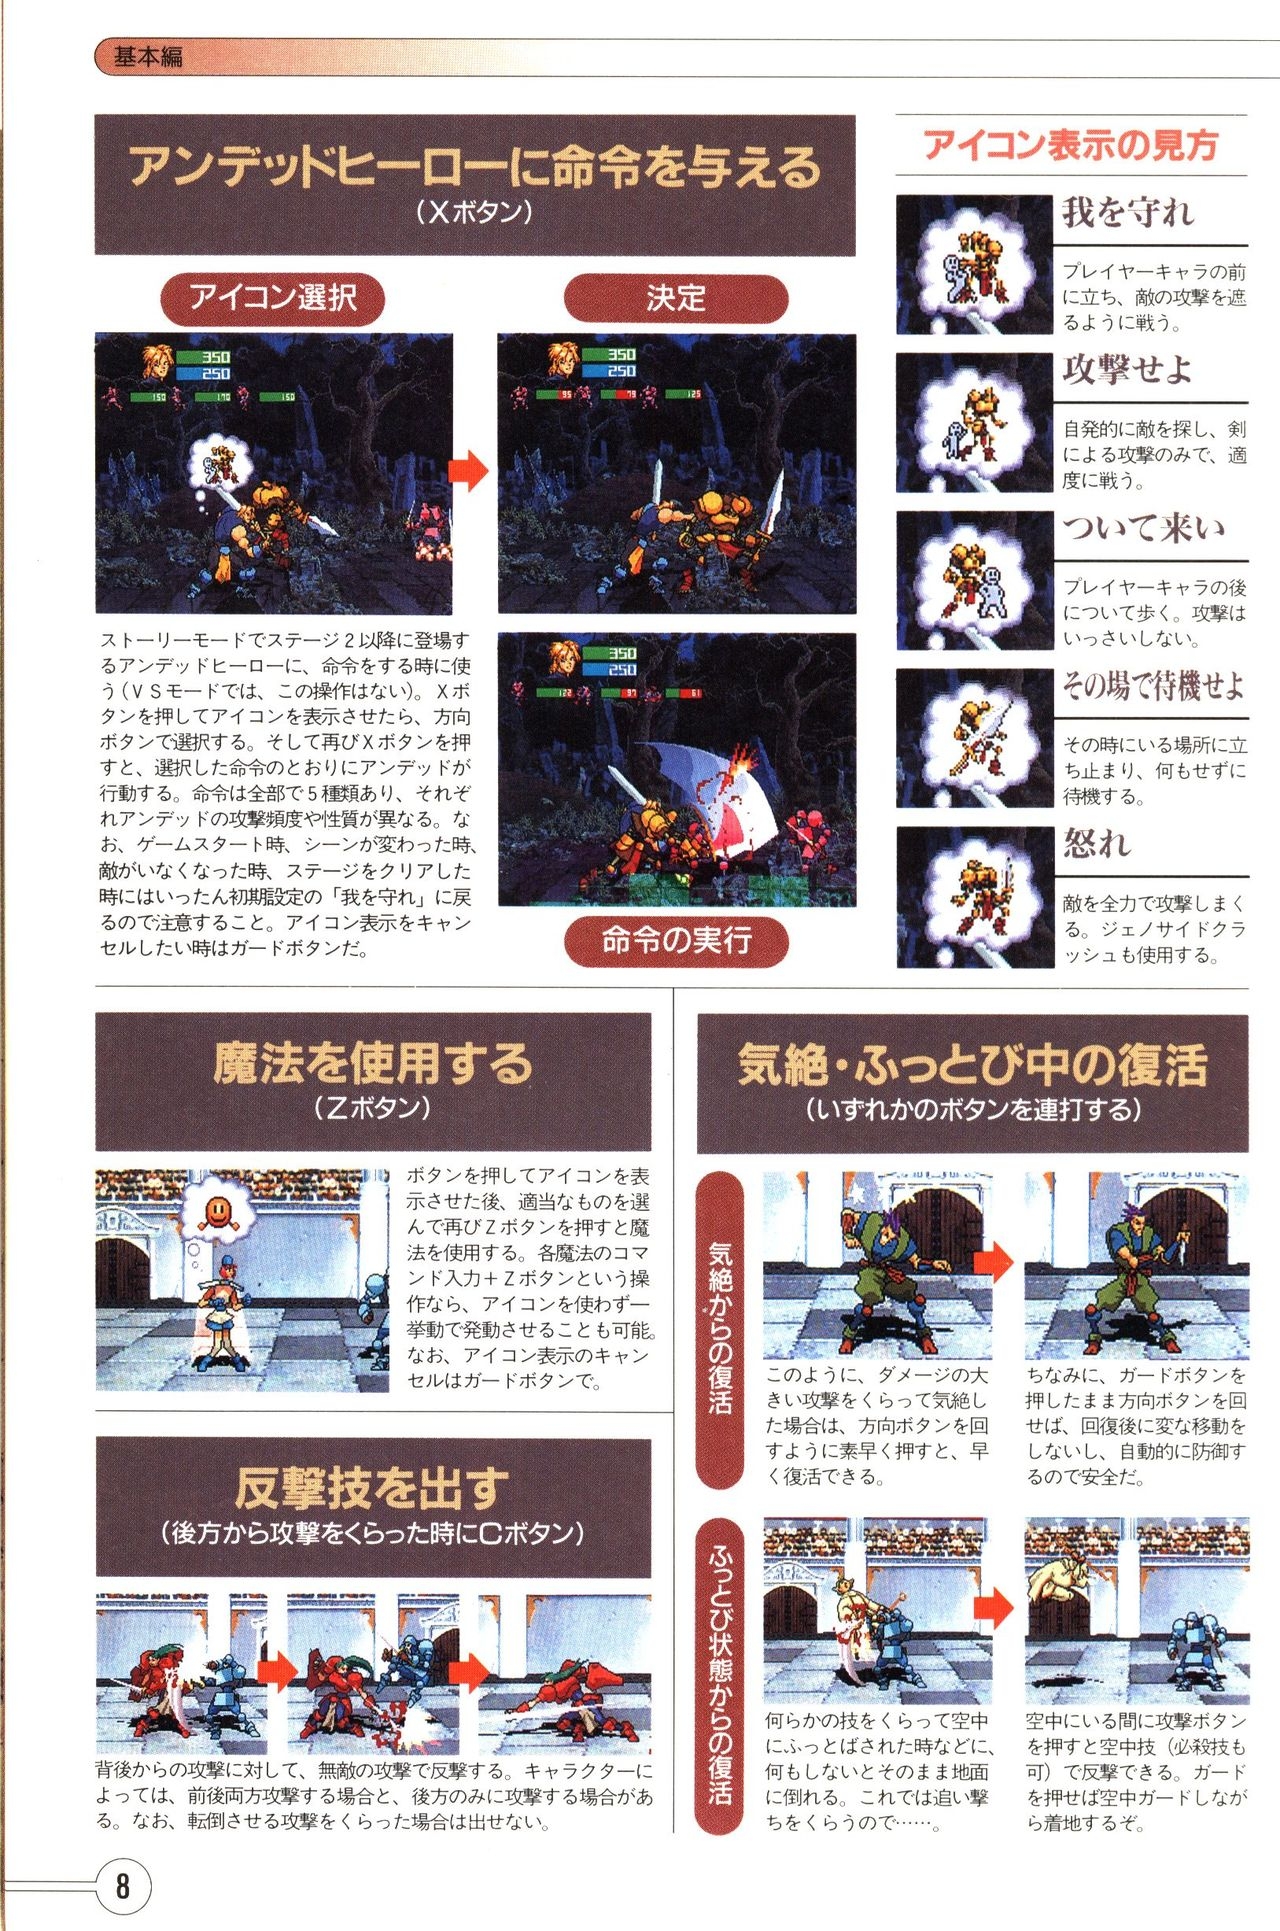 Guardian Heroes Perfect Guide (Sega Saturn magazine books) 10